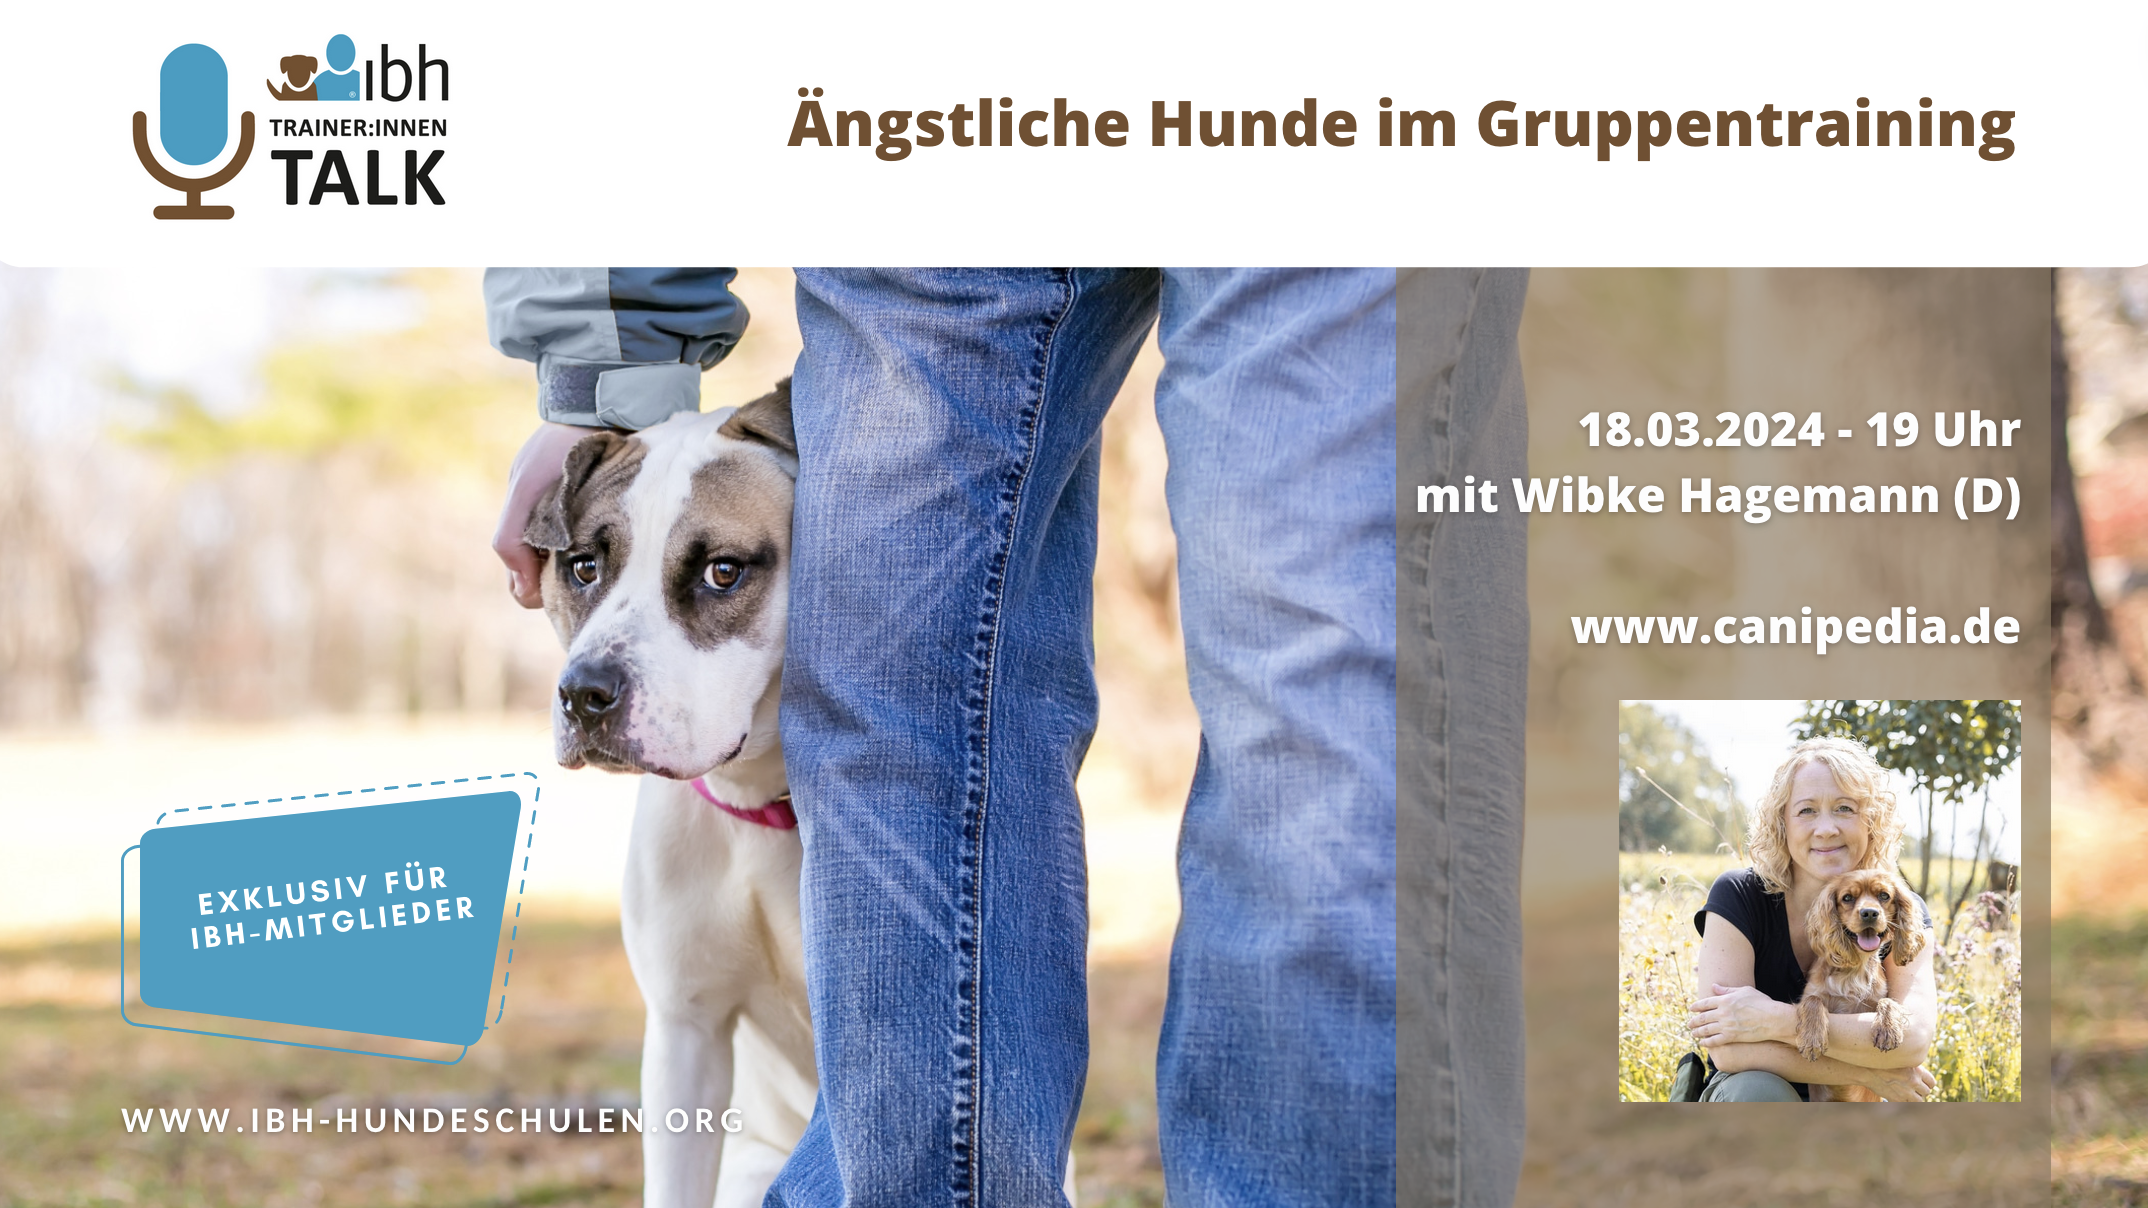 IBH-Trainer:innen-Talk:  Ängstliche Hunde im Gruppentraining - mit Wibke Hagemann (D)